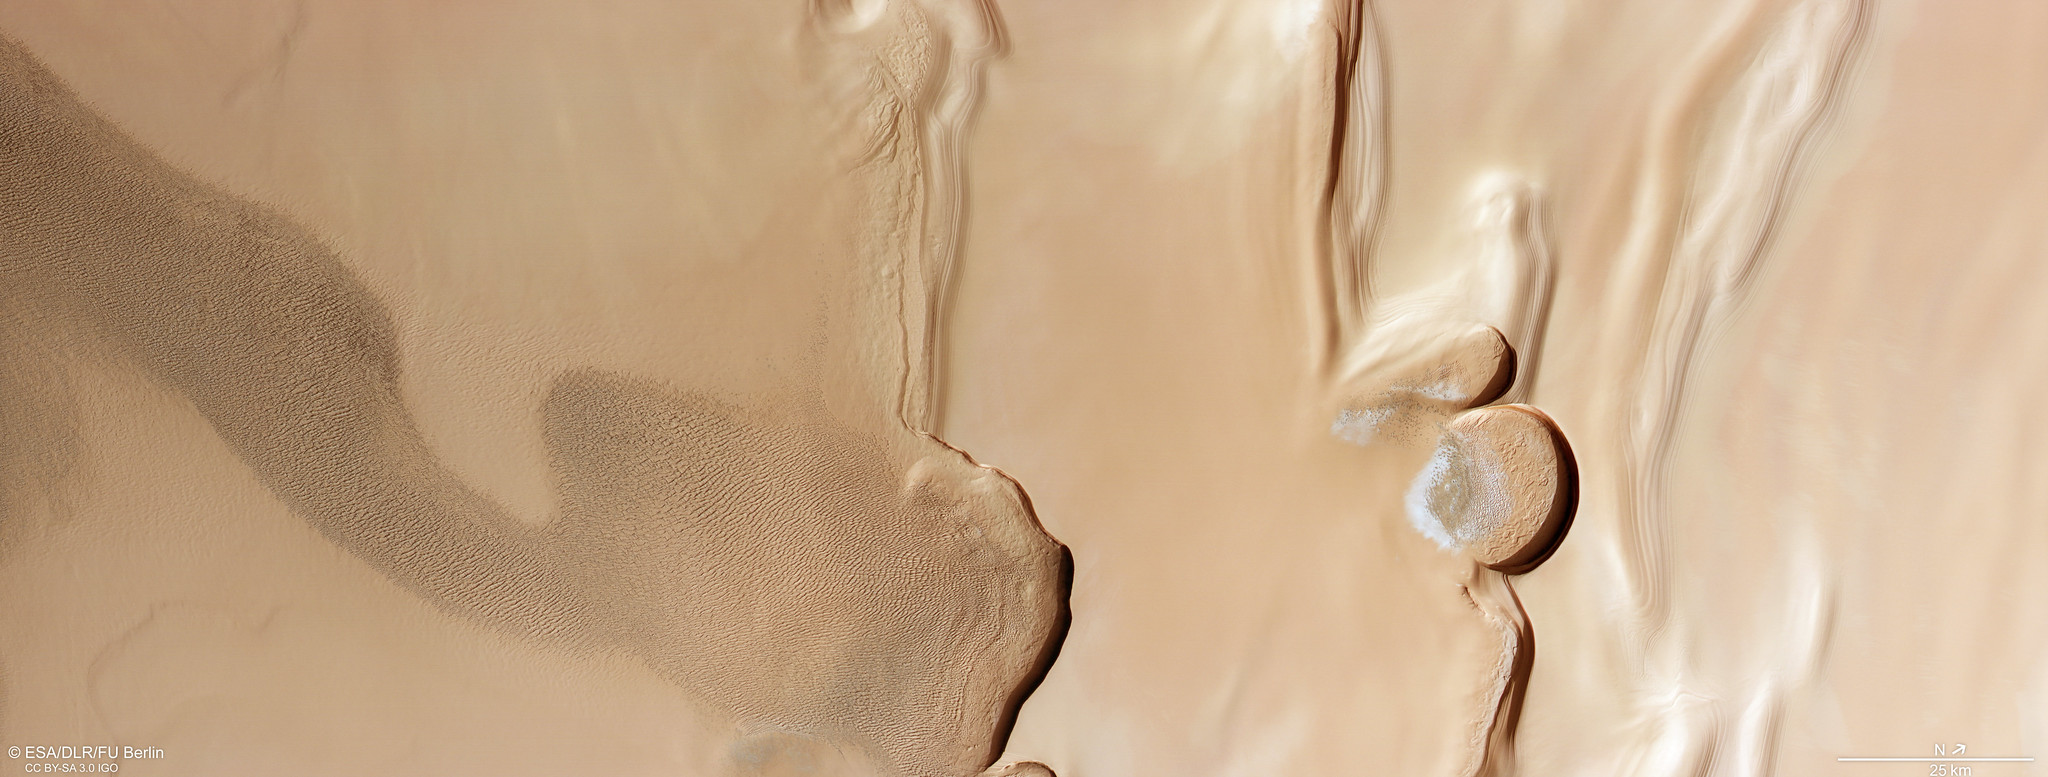 一块棕色的矩形地形显示了火星上的许多特征：左边是起伏的沙丘；两家著名的银行通过框架的中间进行了削减；画面最右侧三分之一处有两个陡峭的半圆形悬崖；以及右侧平坦的地形。整个画面都有分层地面的迹象，陡峭的悬崖在下面浅橙色的地面上投下了黑暗的阴影。